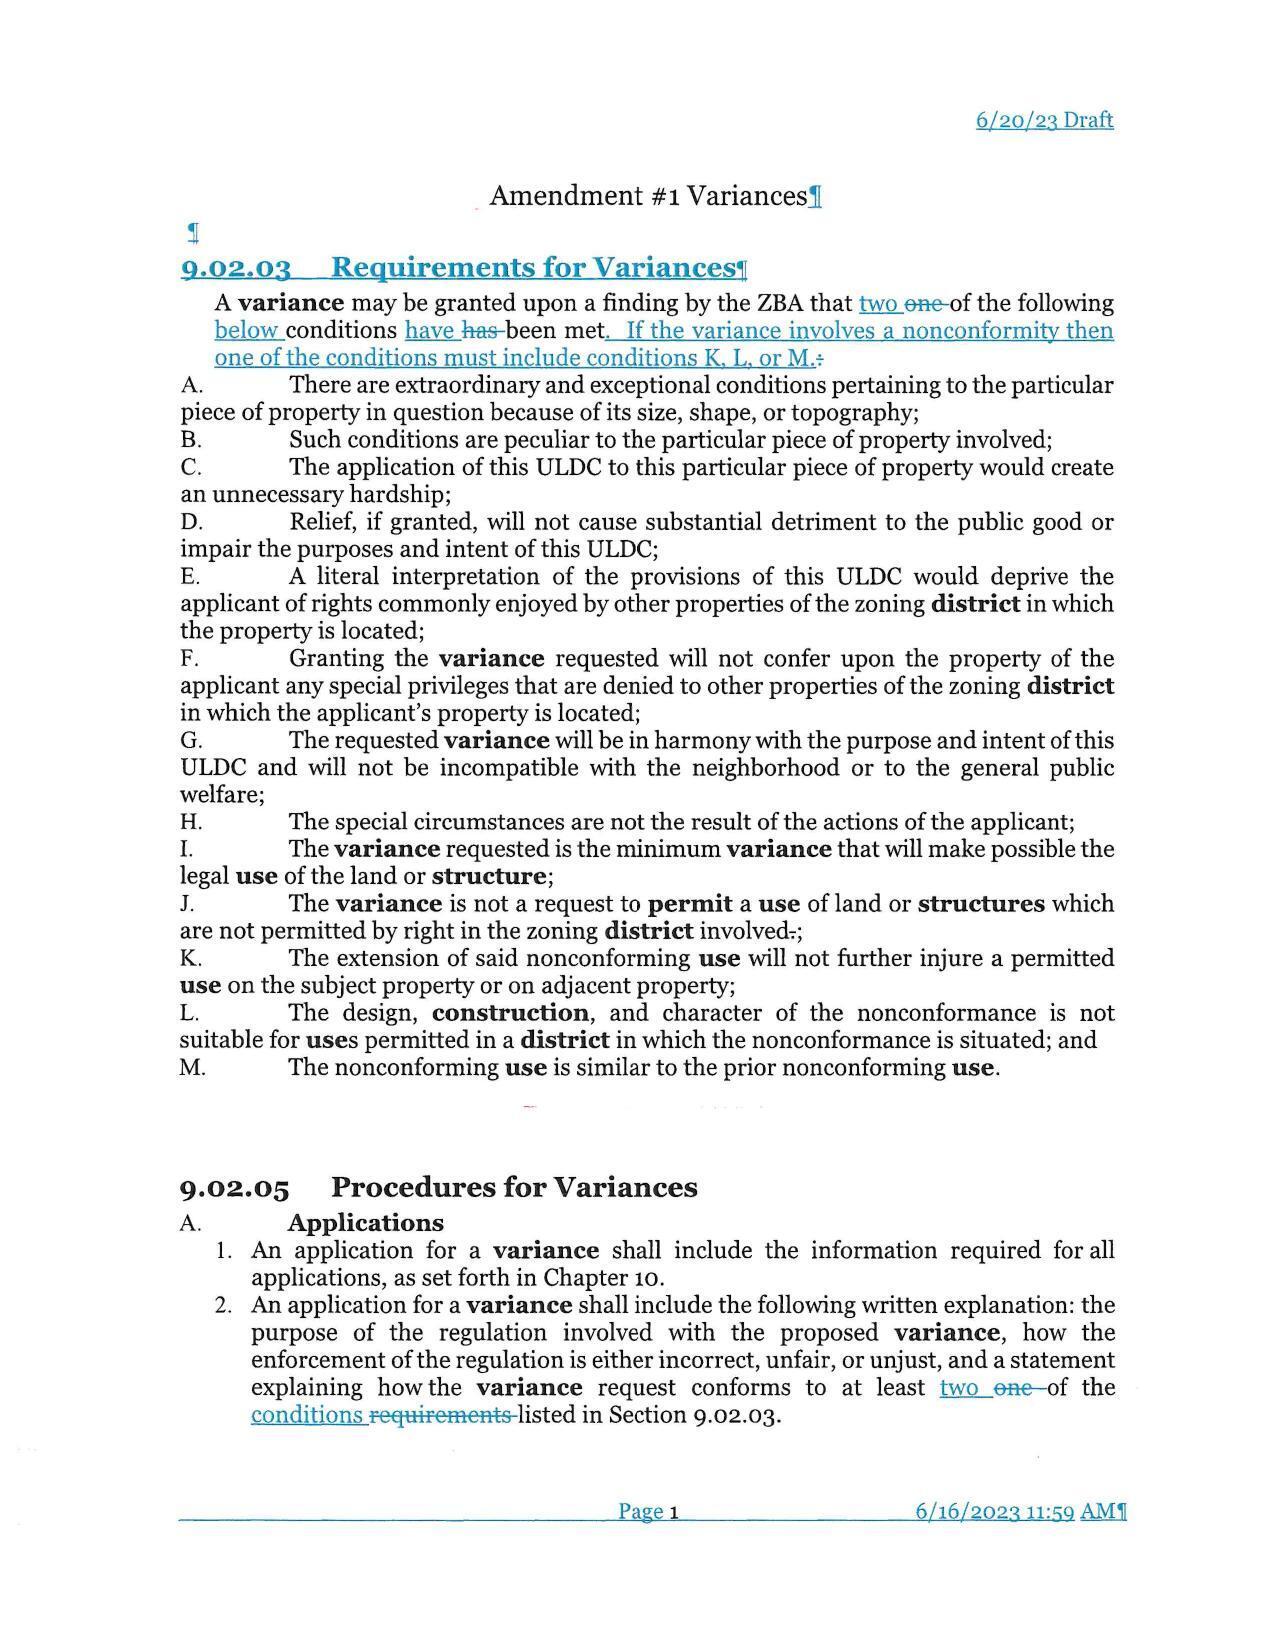 Amendment #1 Variances (changes)